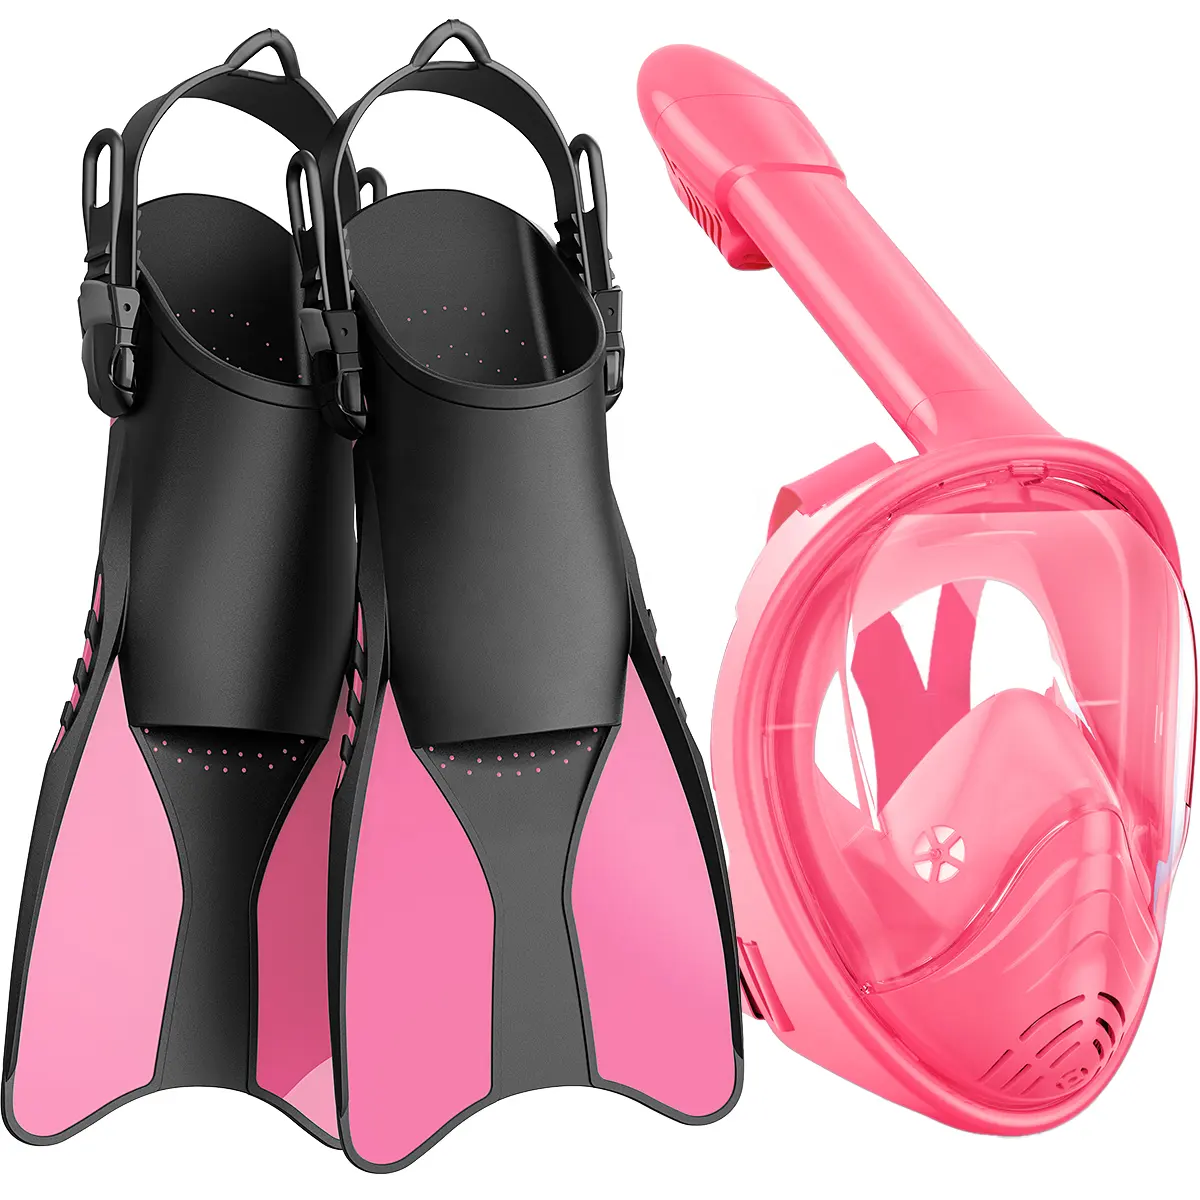 Children Pink Snorkeling Gear Swimming Diving Snorkeling Fins Set Full Face Diving Mask Dive Masked Set For Kids